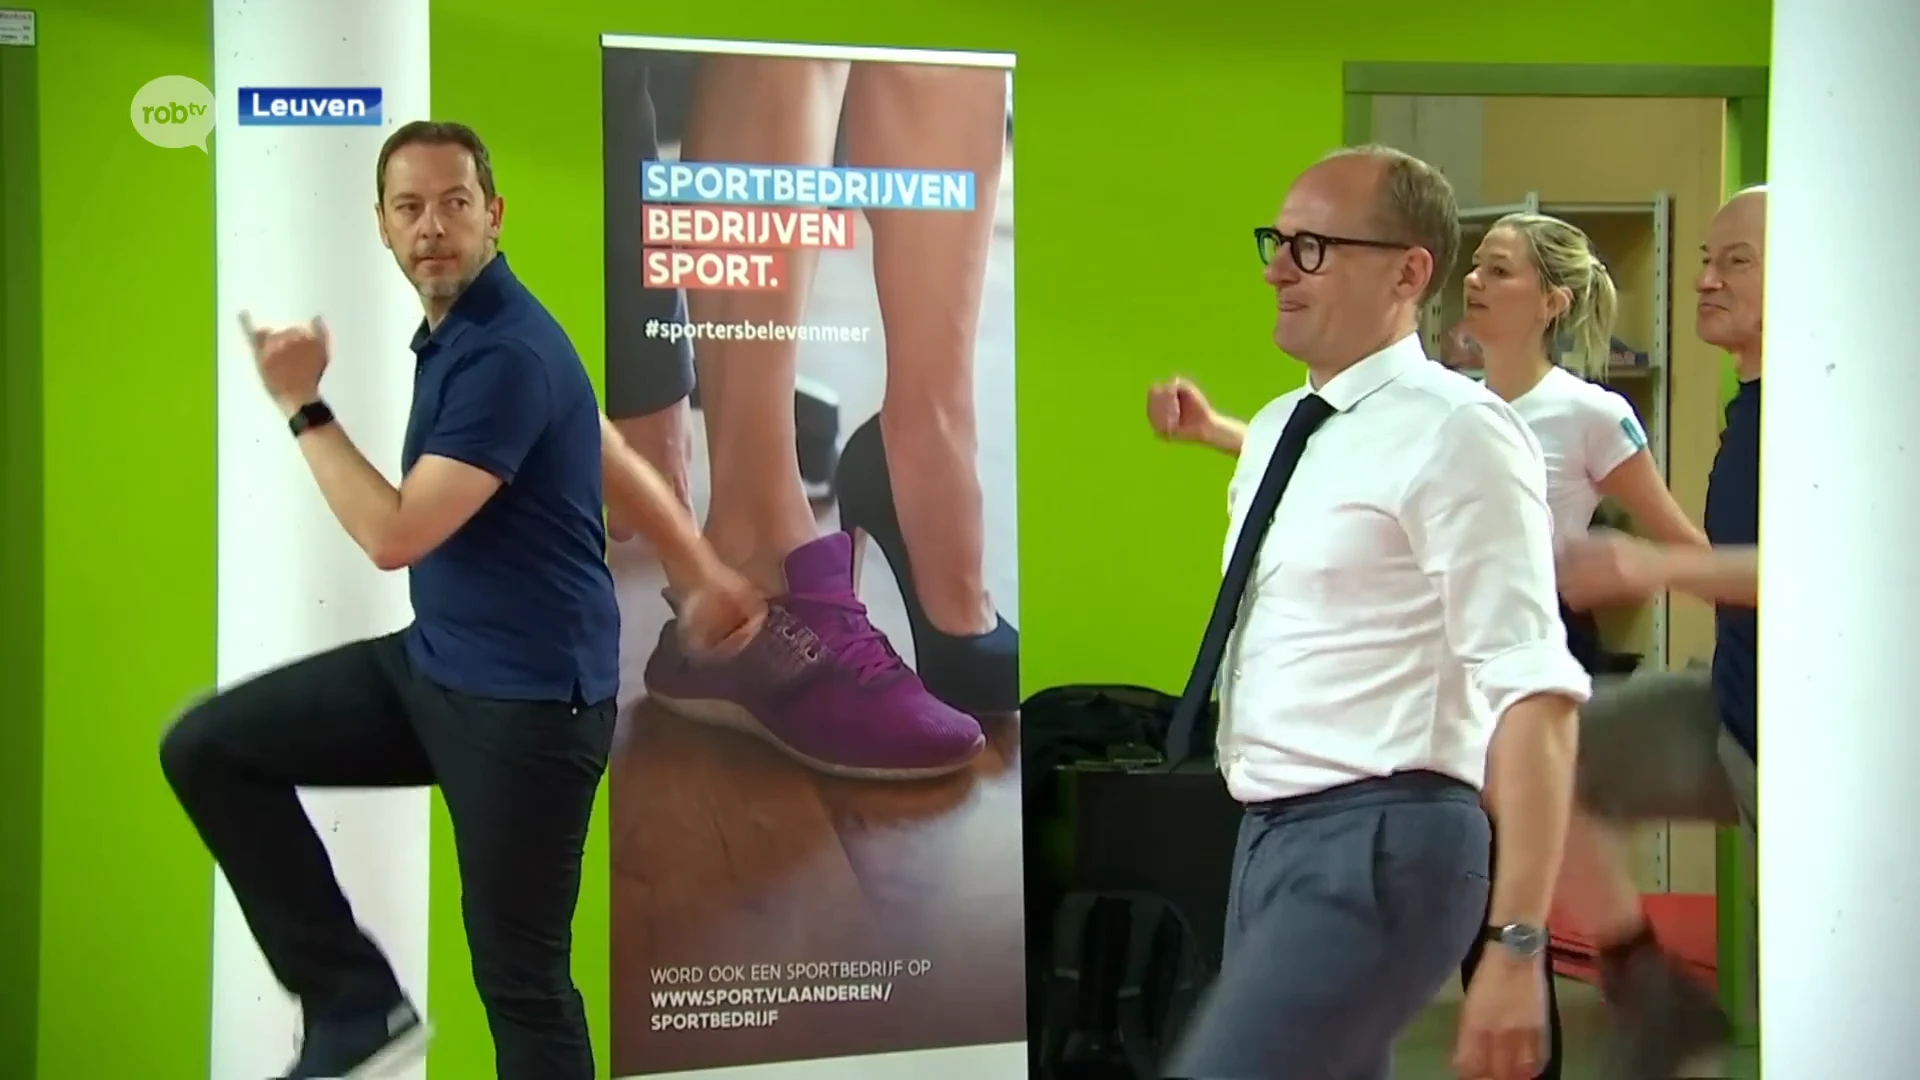 Siemens in Heverlee krijgt als eerste het label Sportbedrijf van minister Ben Weyts